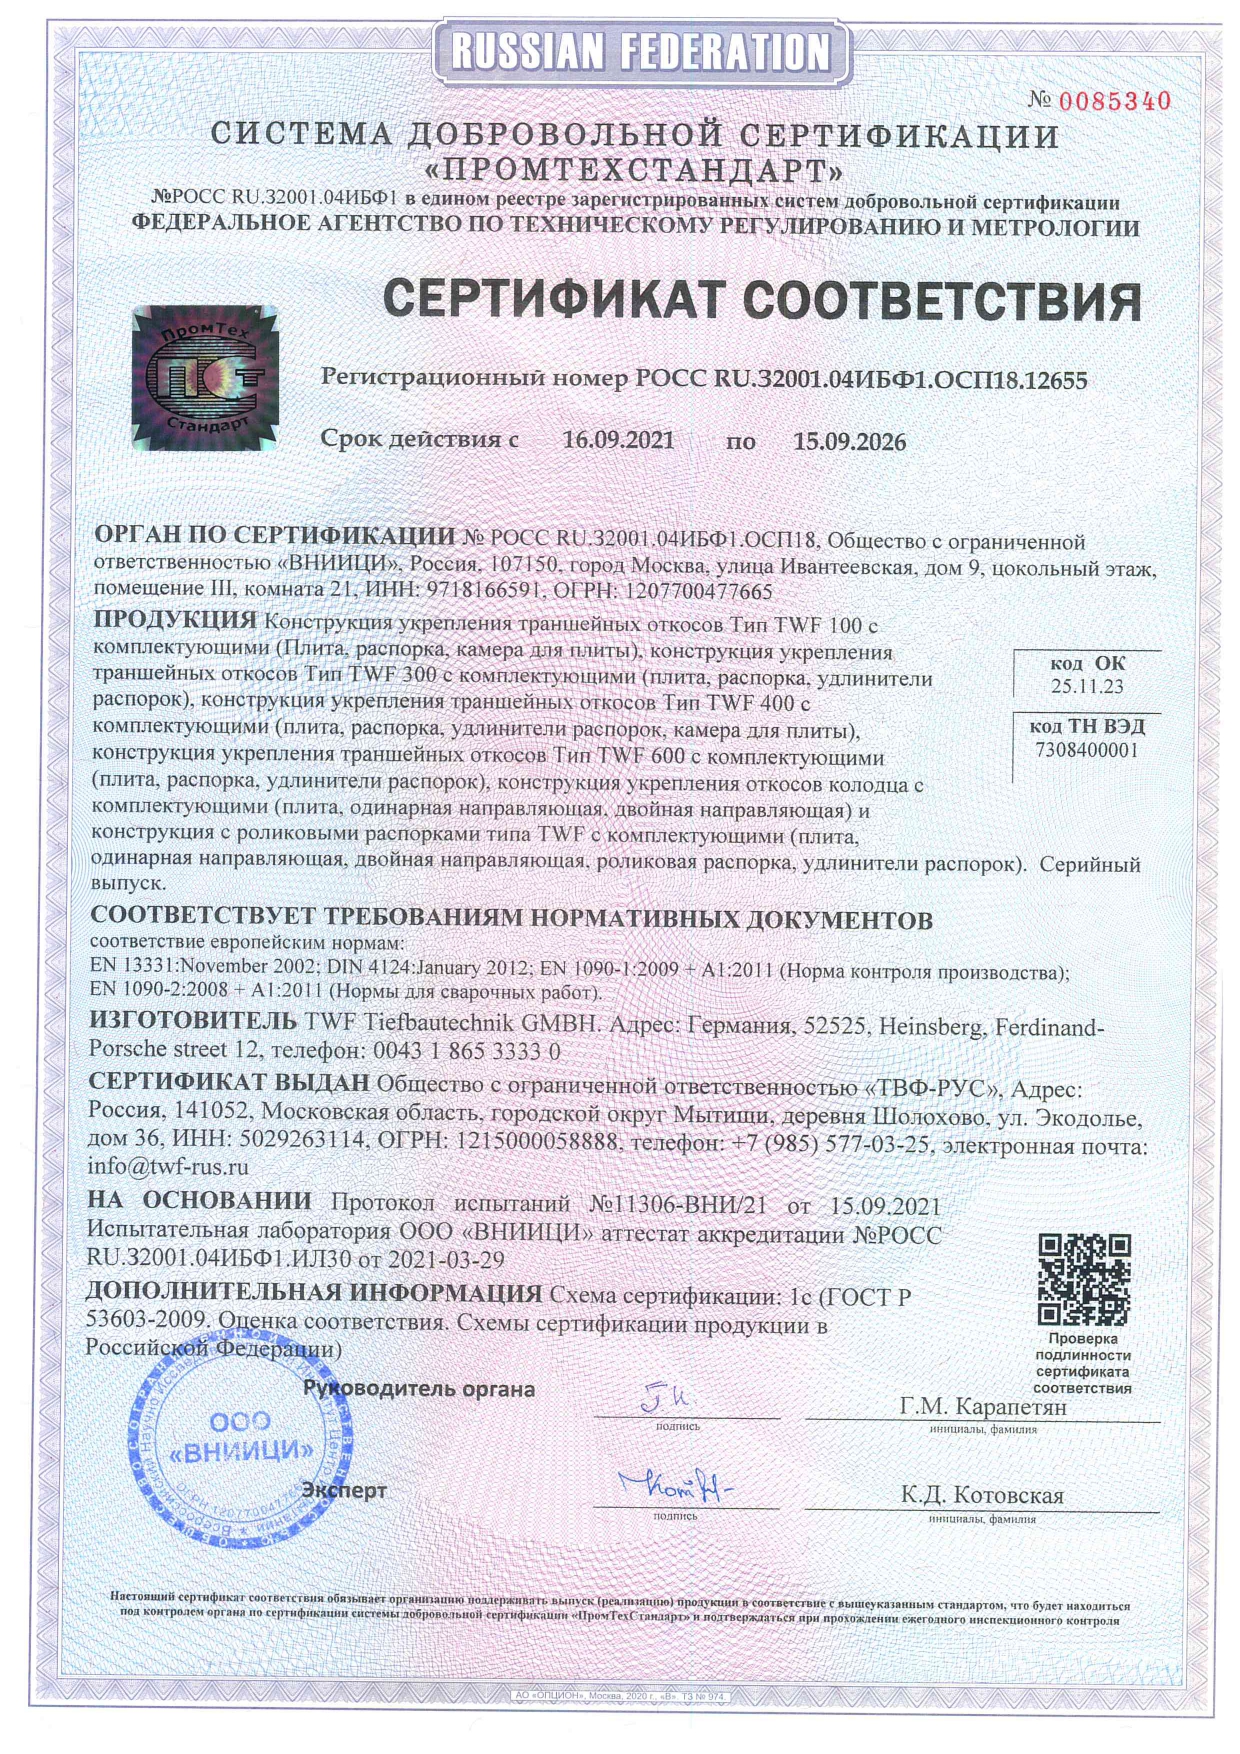 сертификат траншейных крепей TWF